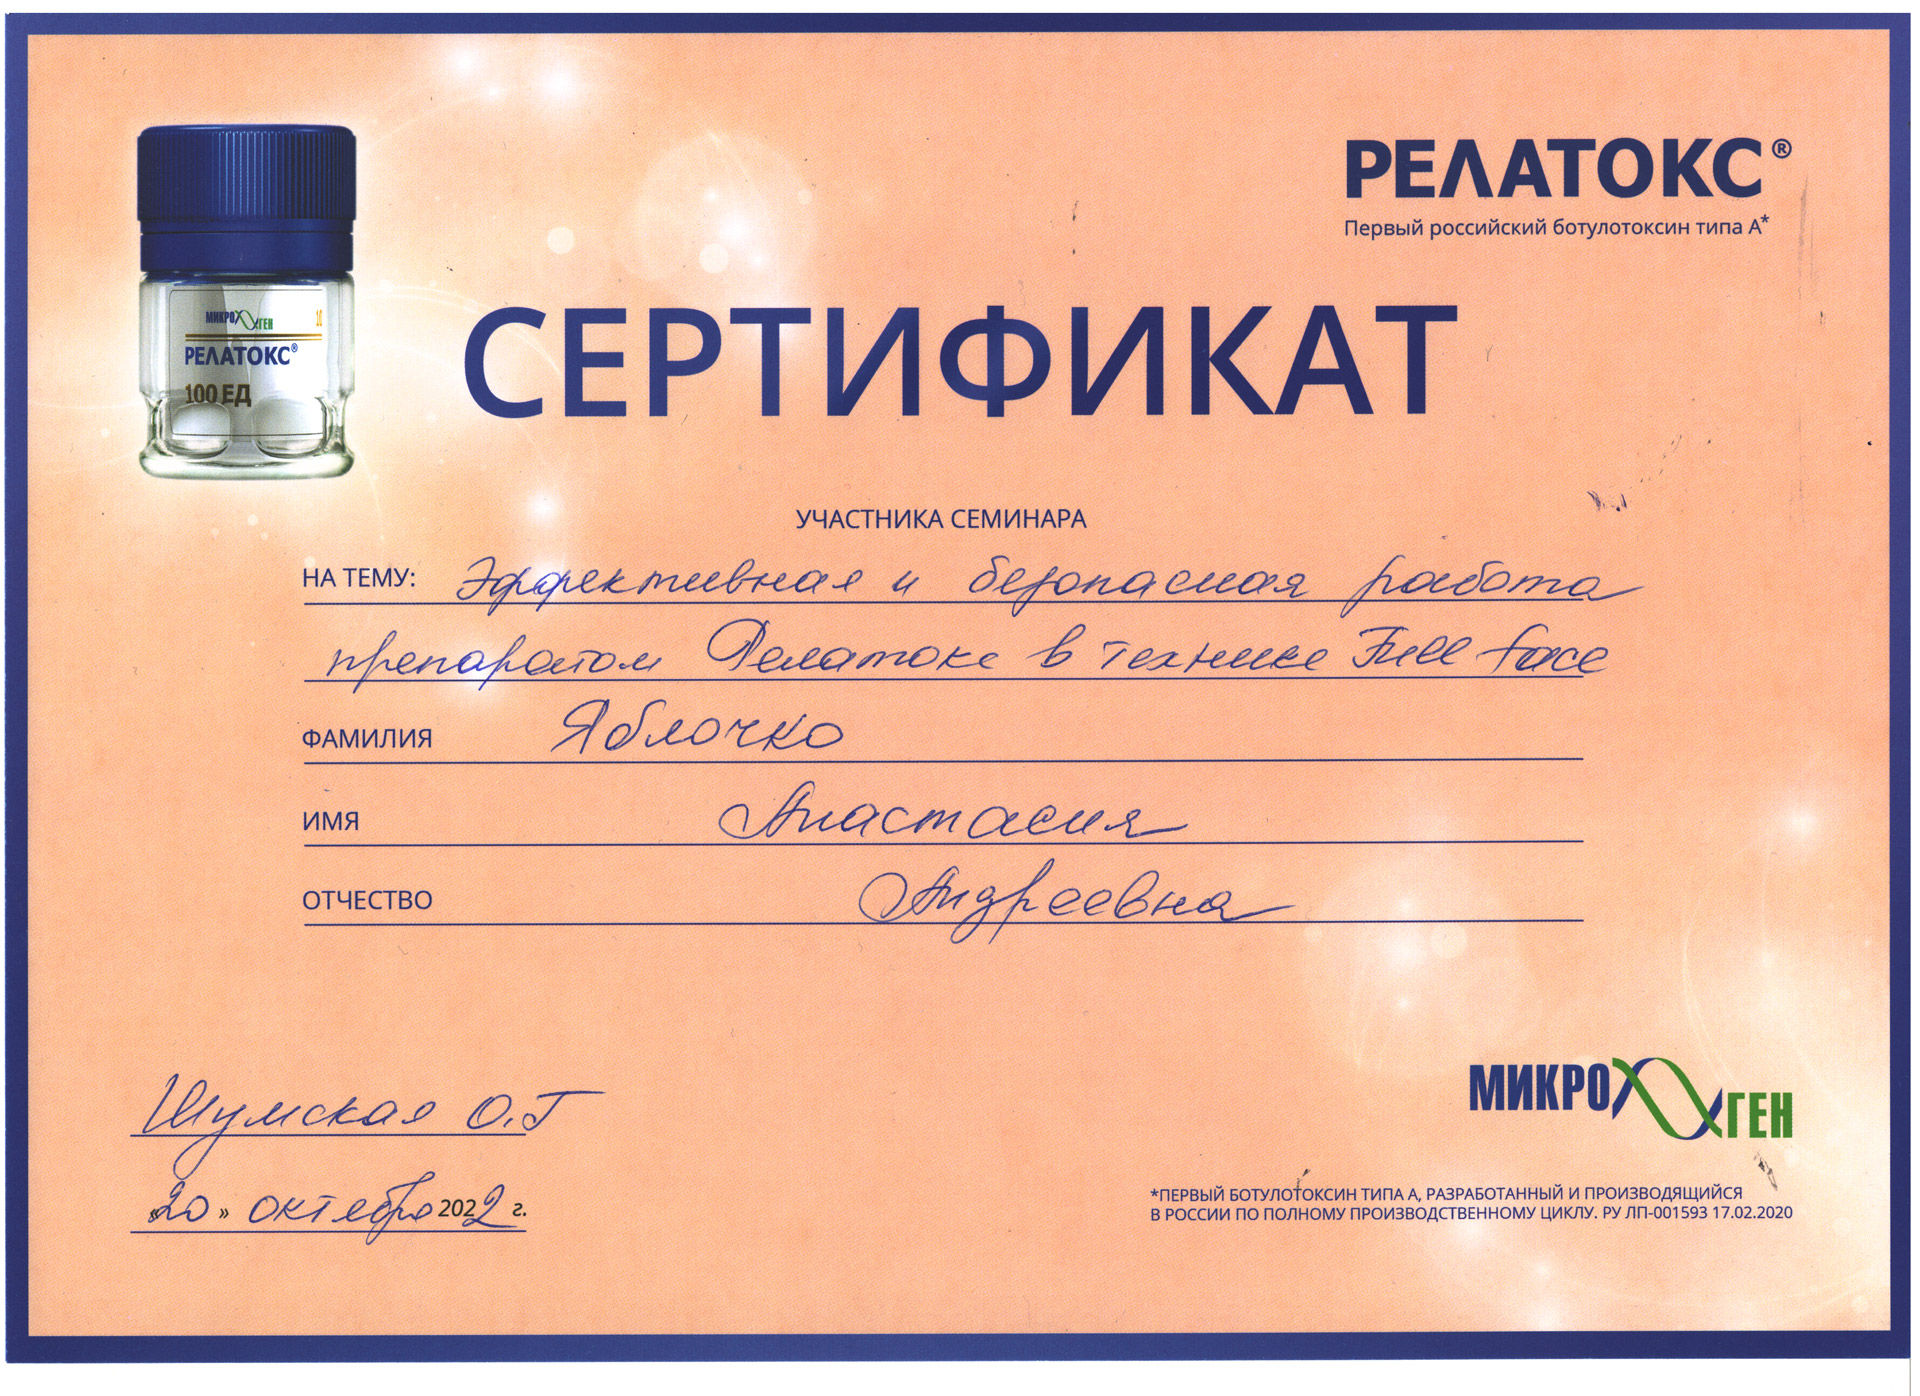 Сертификат — Семинар «Эффективная и безопасная работа препаратом Релатокс». Яблочко Анастасия Андреевна